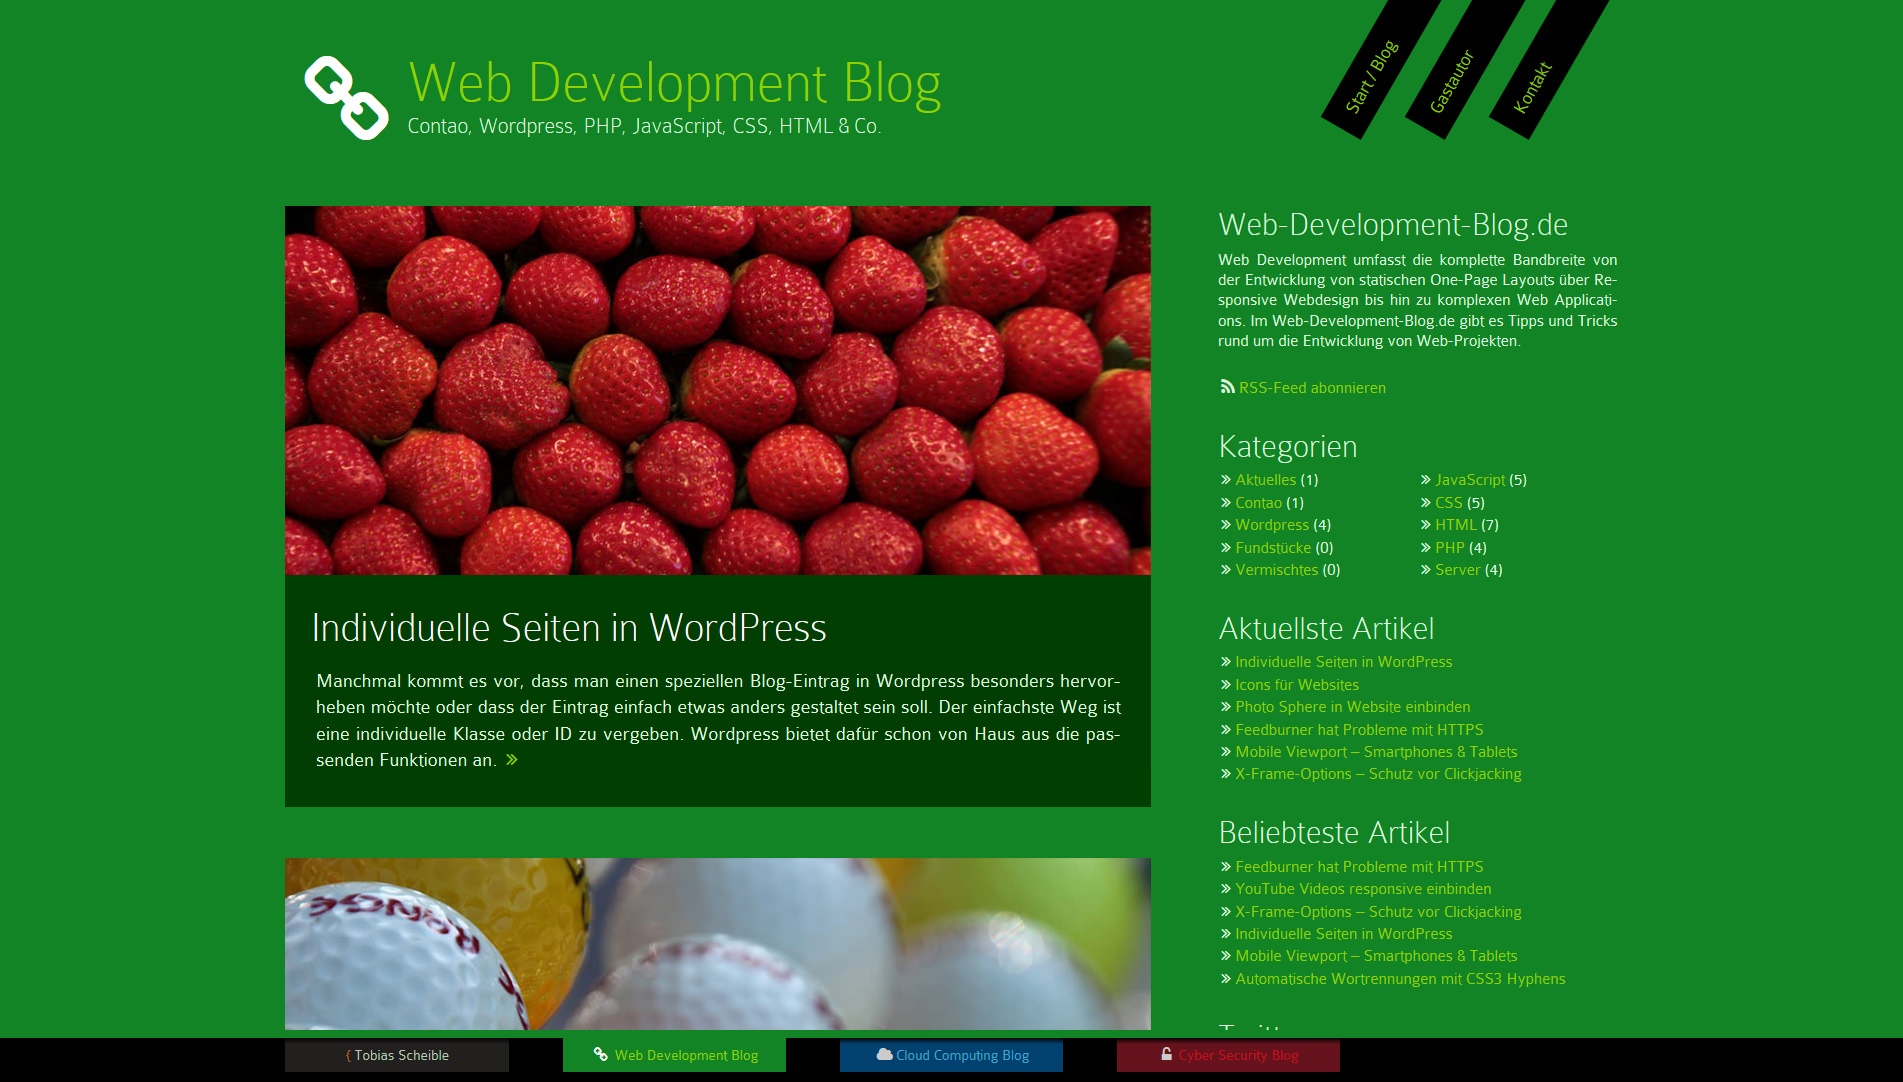 Neuer Blog über Web-Entwicklung